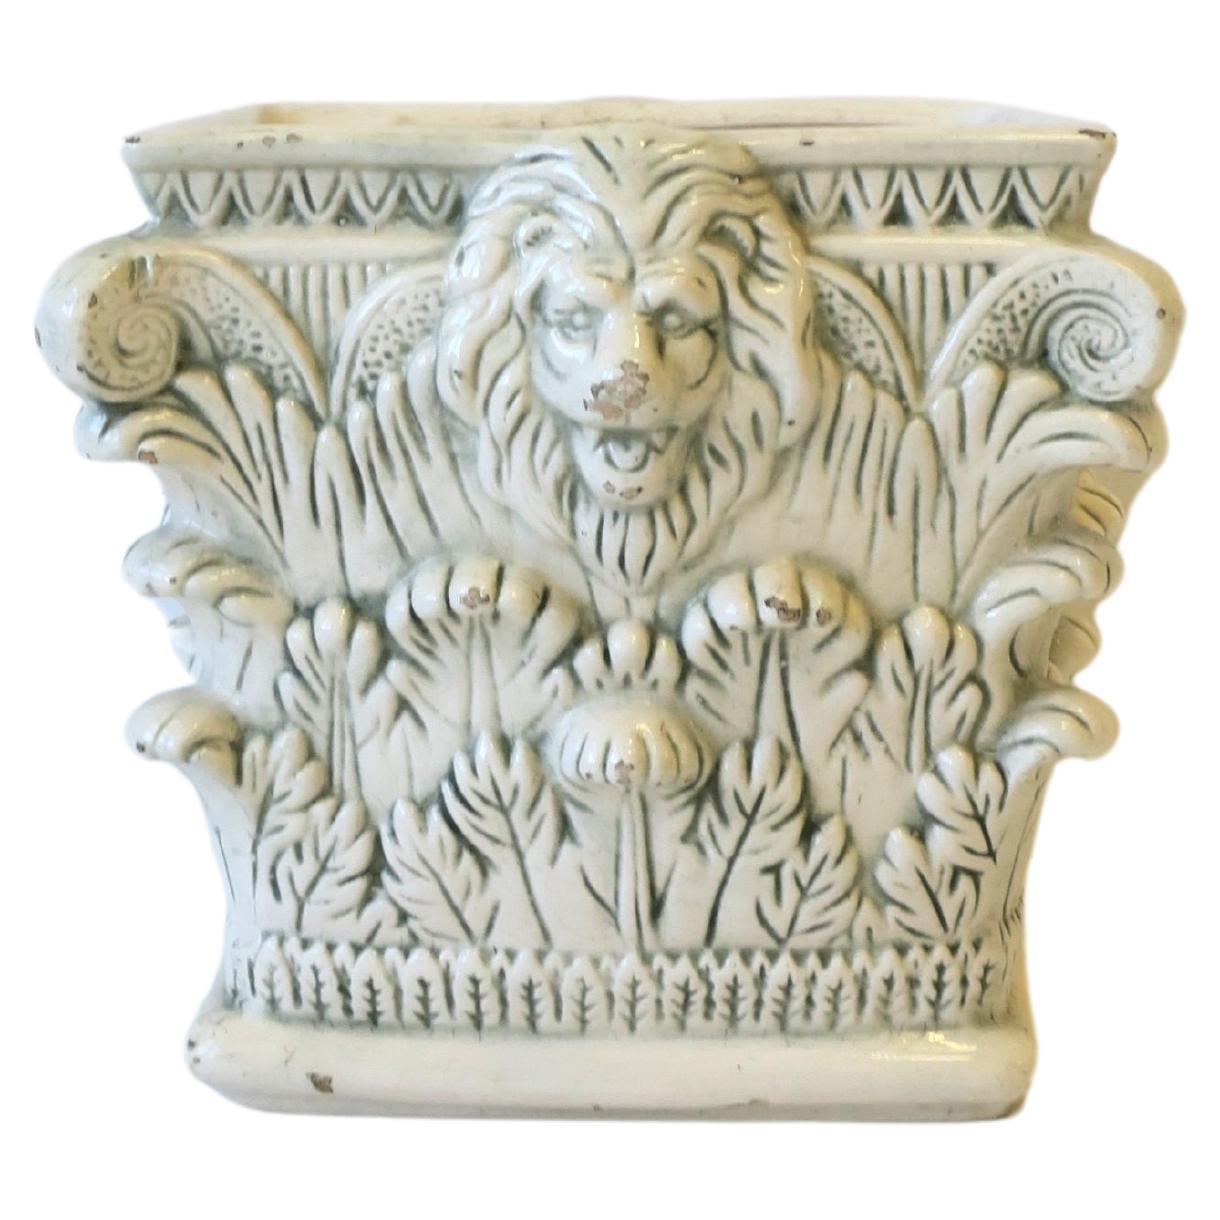 Italian Planter Pot Jardinière Cachepot with Lion Head Design